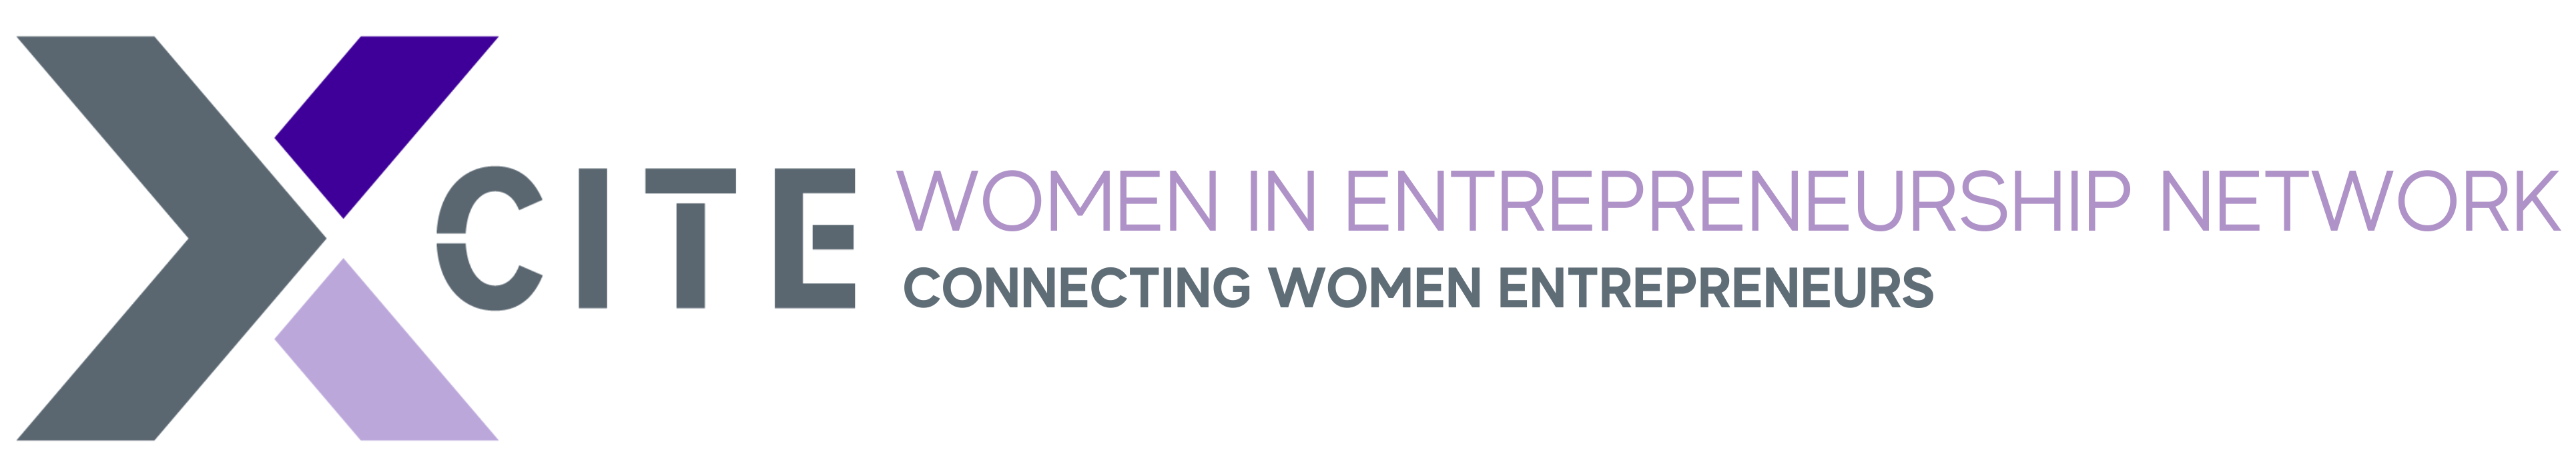 xCITE: Women In Entrepreneurship Network Connecting Women Entrepreneurs